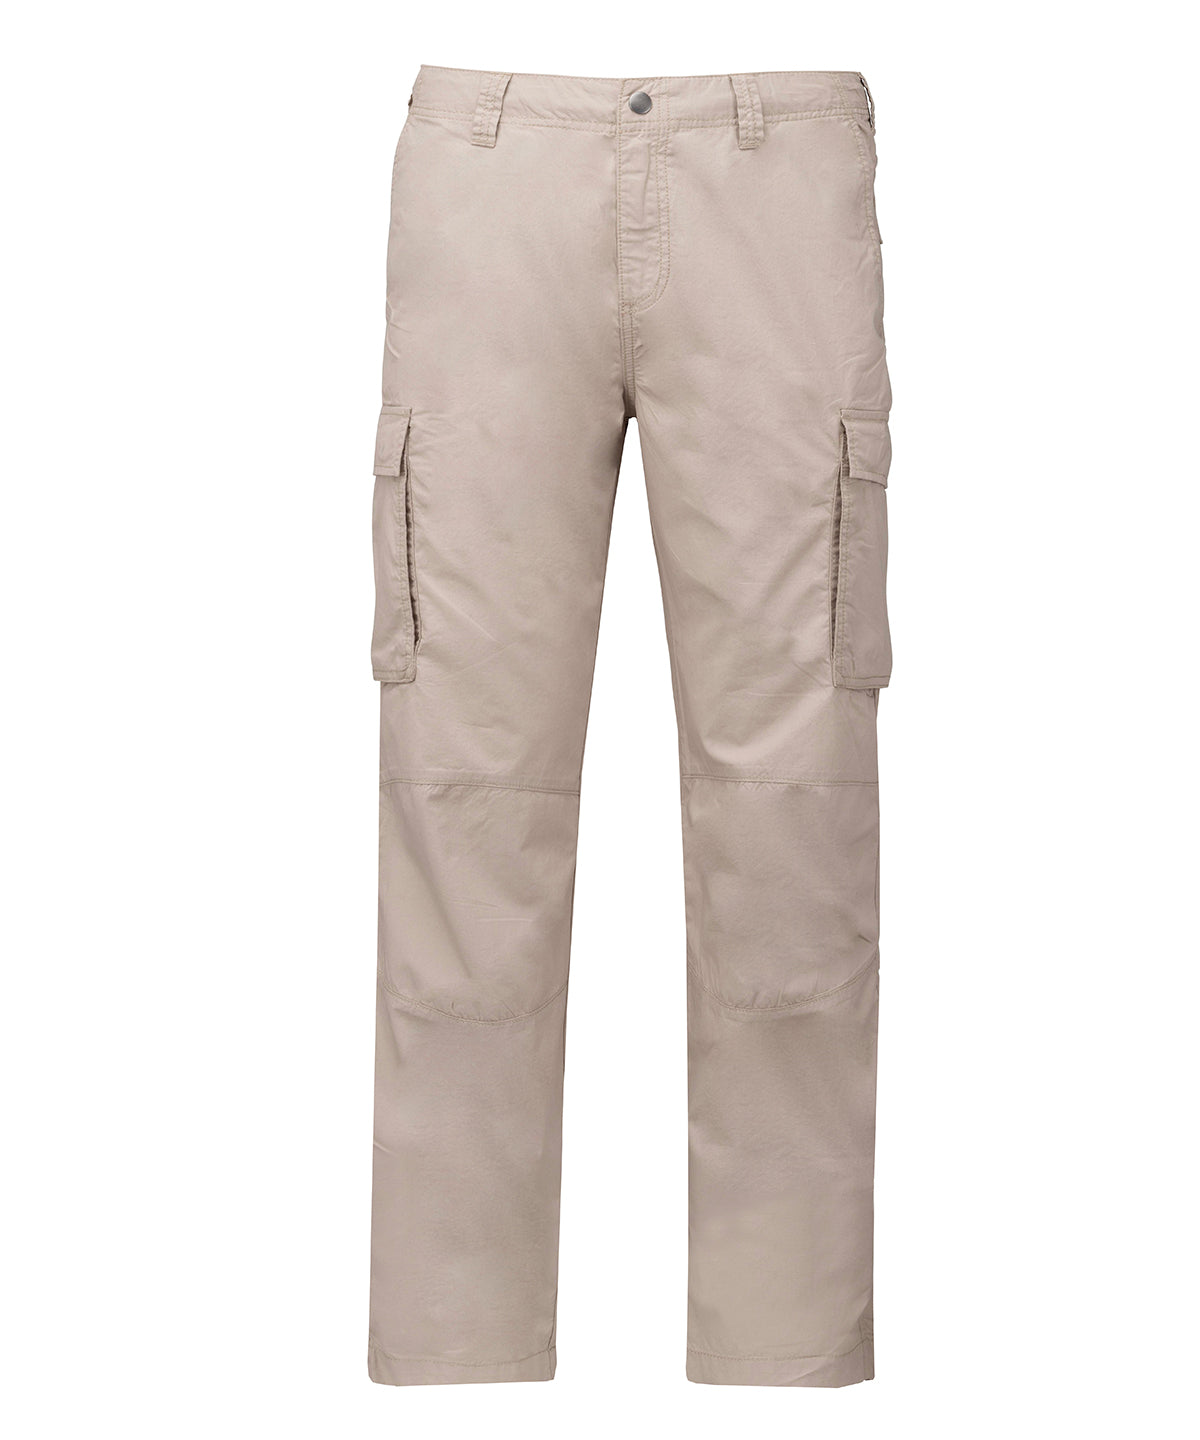 Buxur - Men's Lightweight Multipocket Trousers